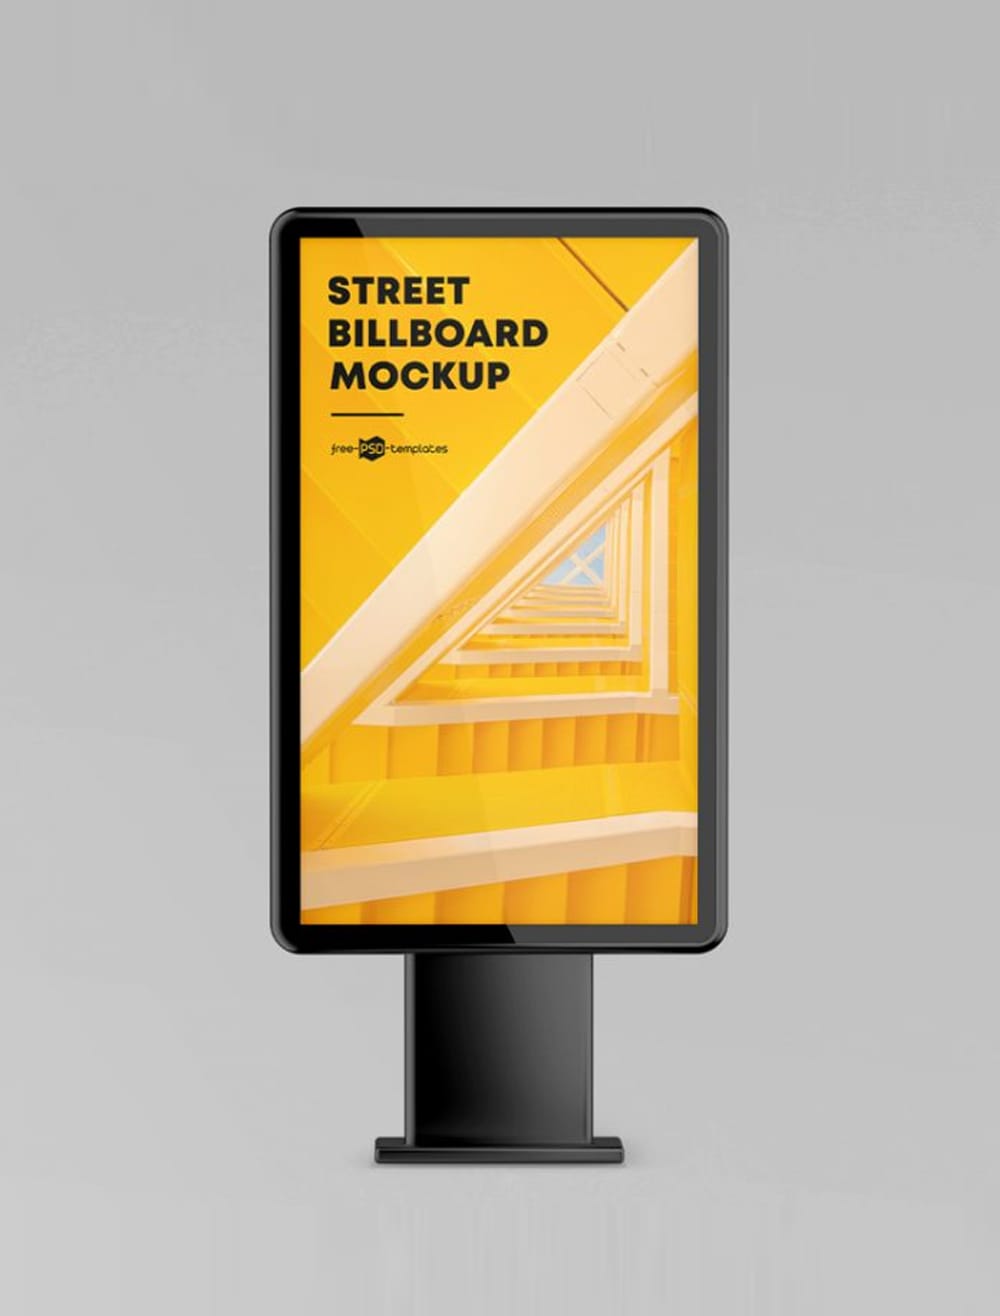 Free Street Billboard Mockup